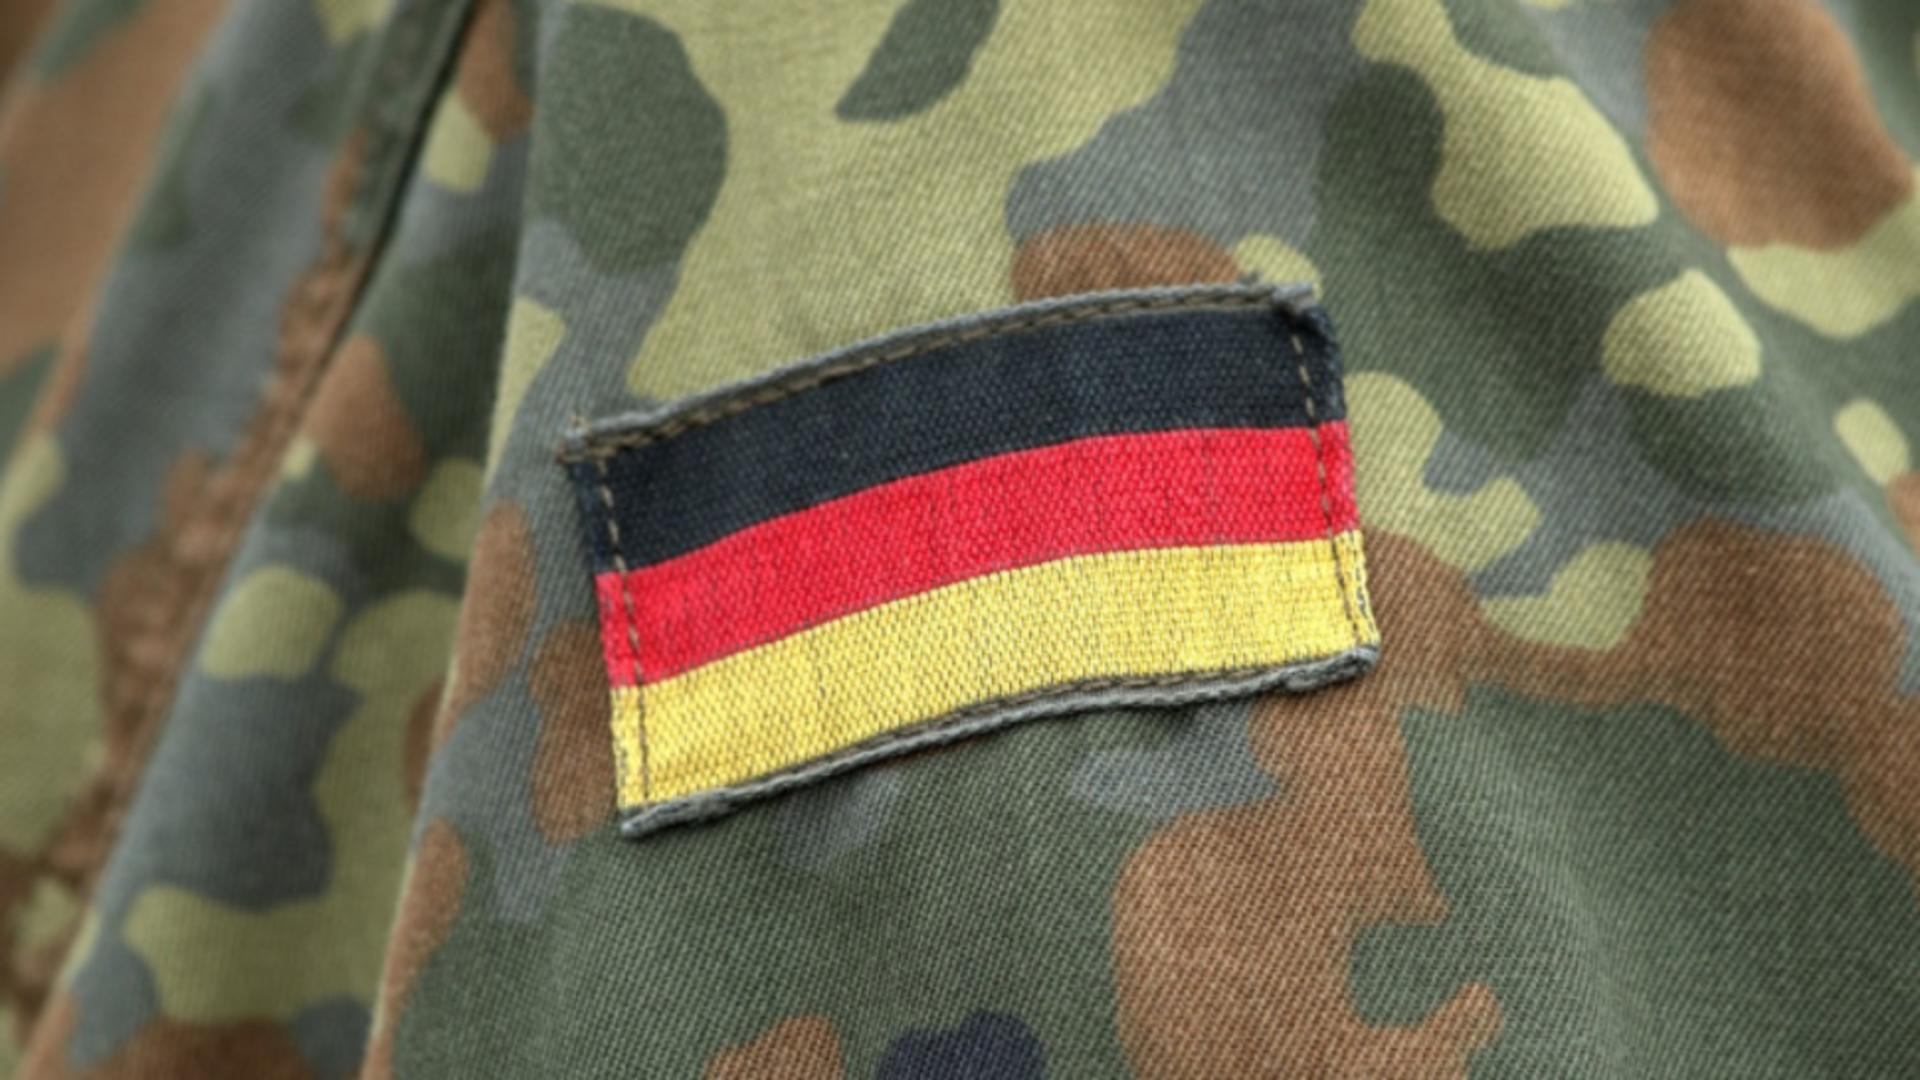 Ofiţer în rezervă al armatei germane, inculpat pentru spionaj / Foto: Profi Media